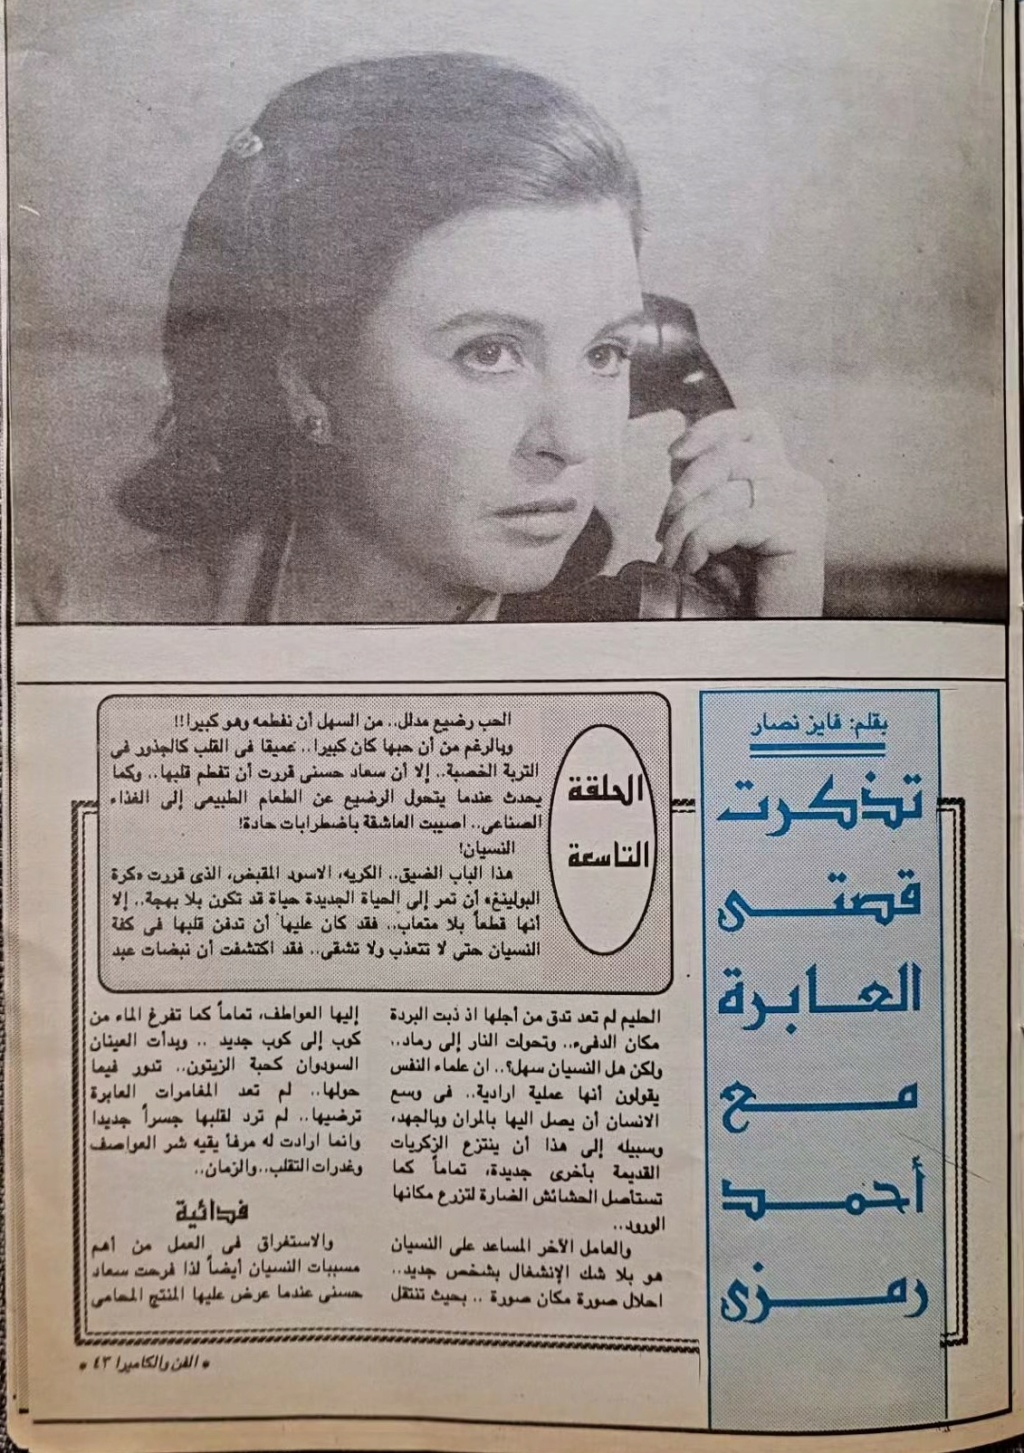 حسني - مقال صحفي : سعاد حسني تتذكر .. اختفيت وحبيبي الجديد وراء الأهرام 1992 م 289